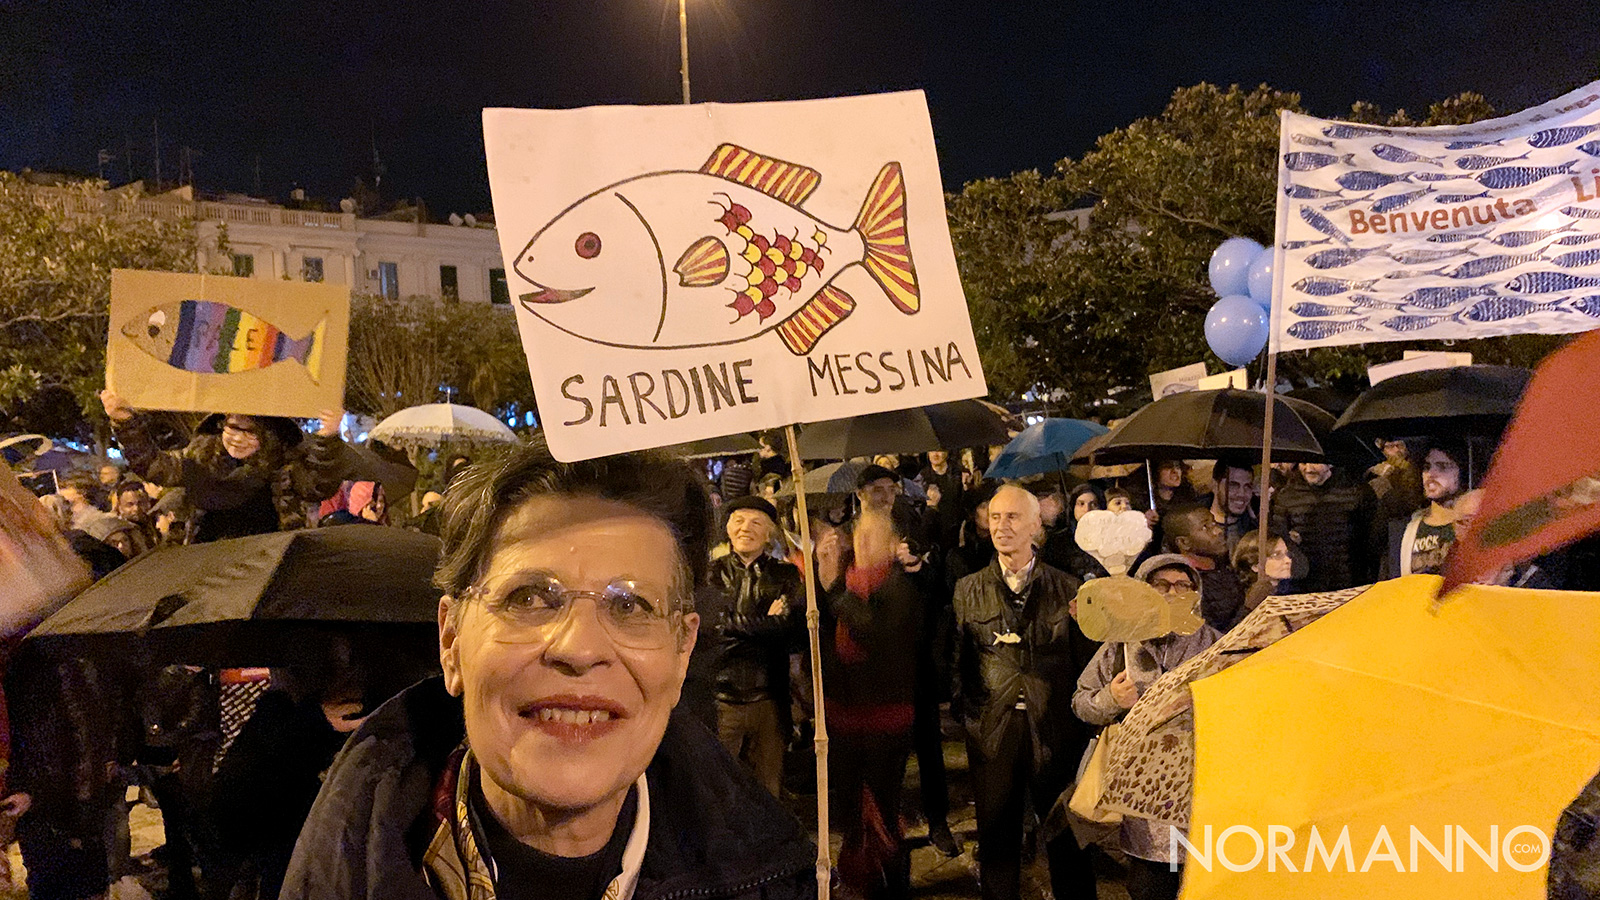 manifestazione delle sardine a messina, a piazza unione europea